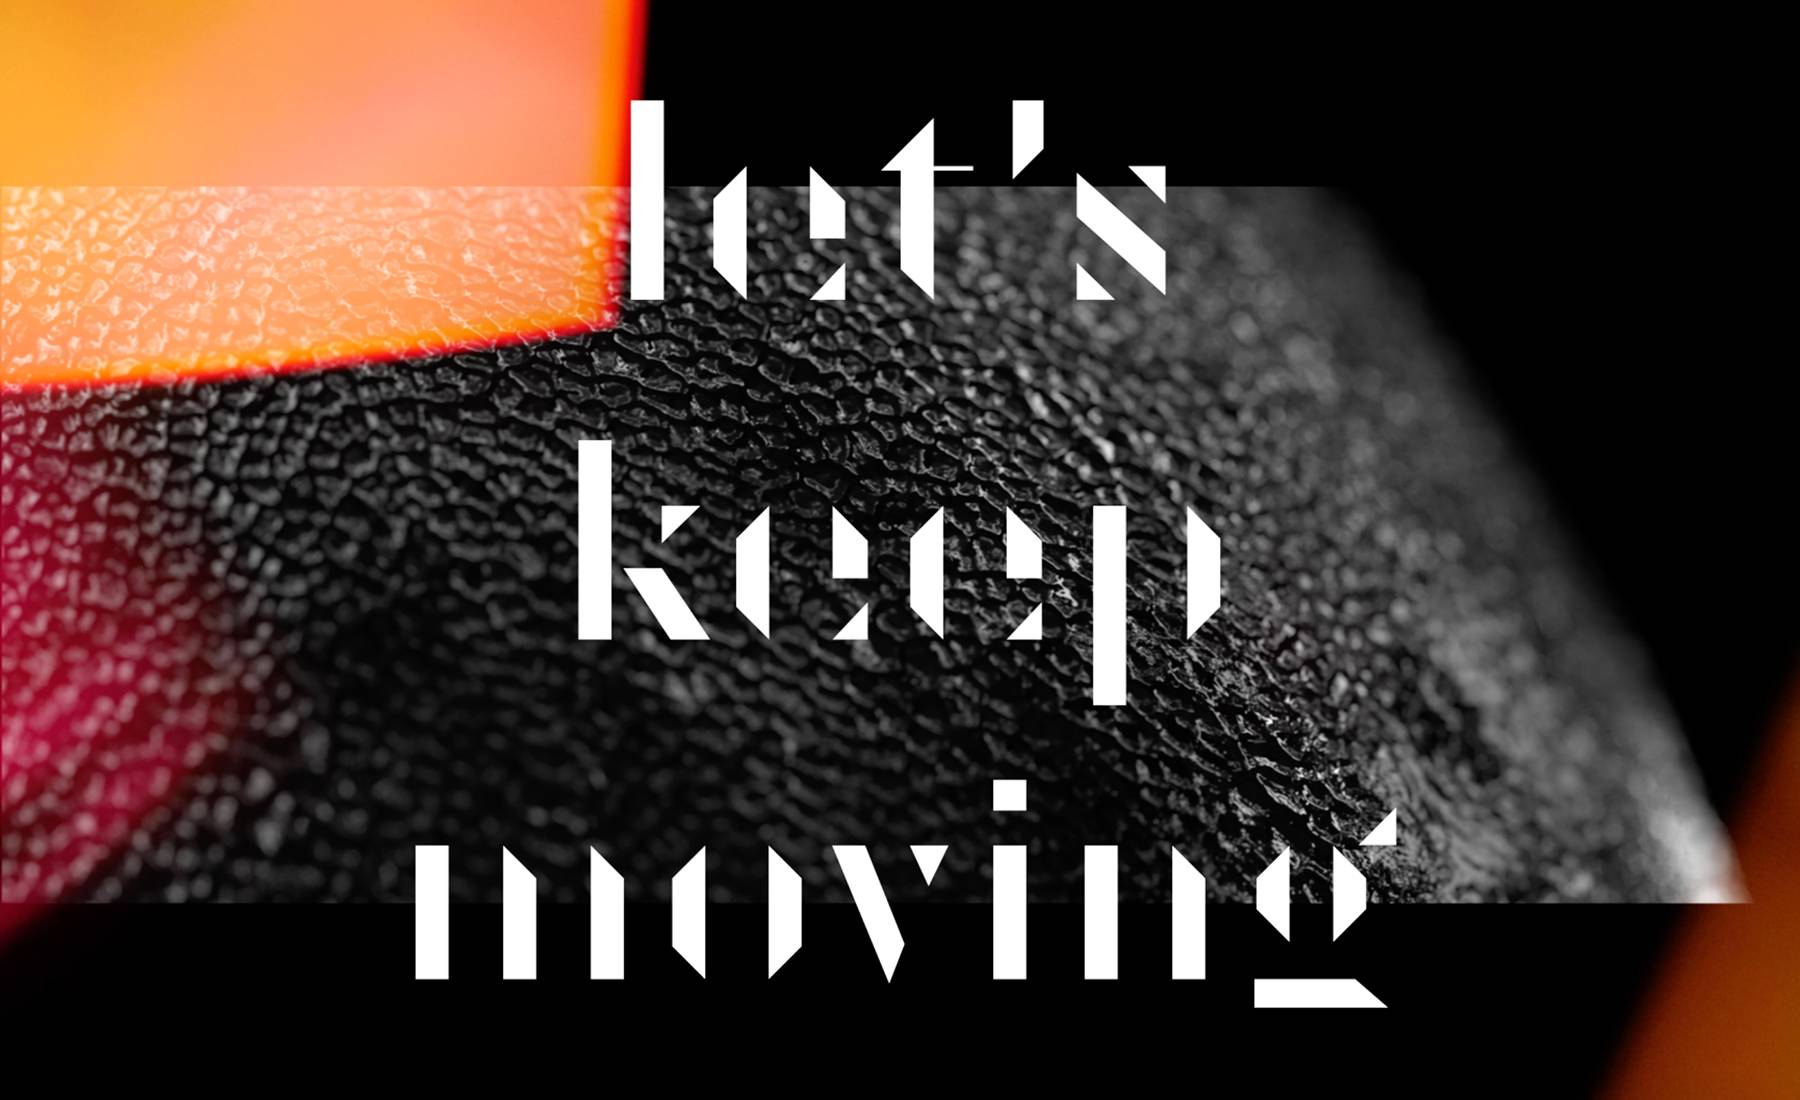 Kastuvas emie keep. Keep moving forward. Keep on moving kastuvas feat. Emie.